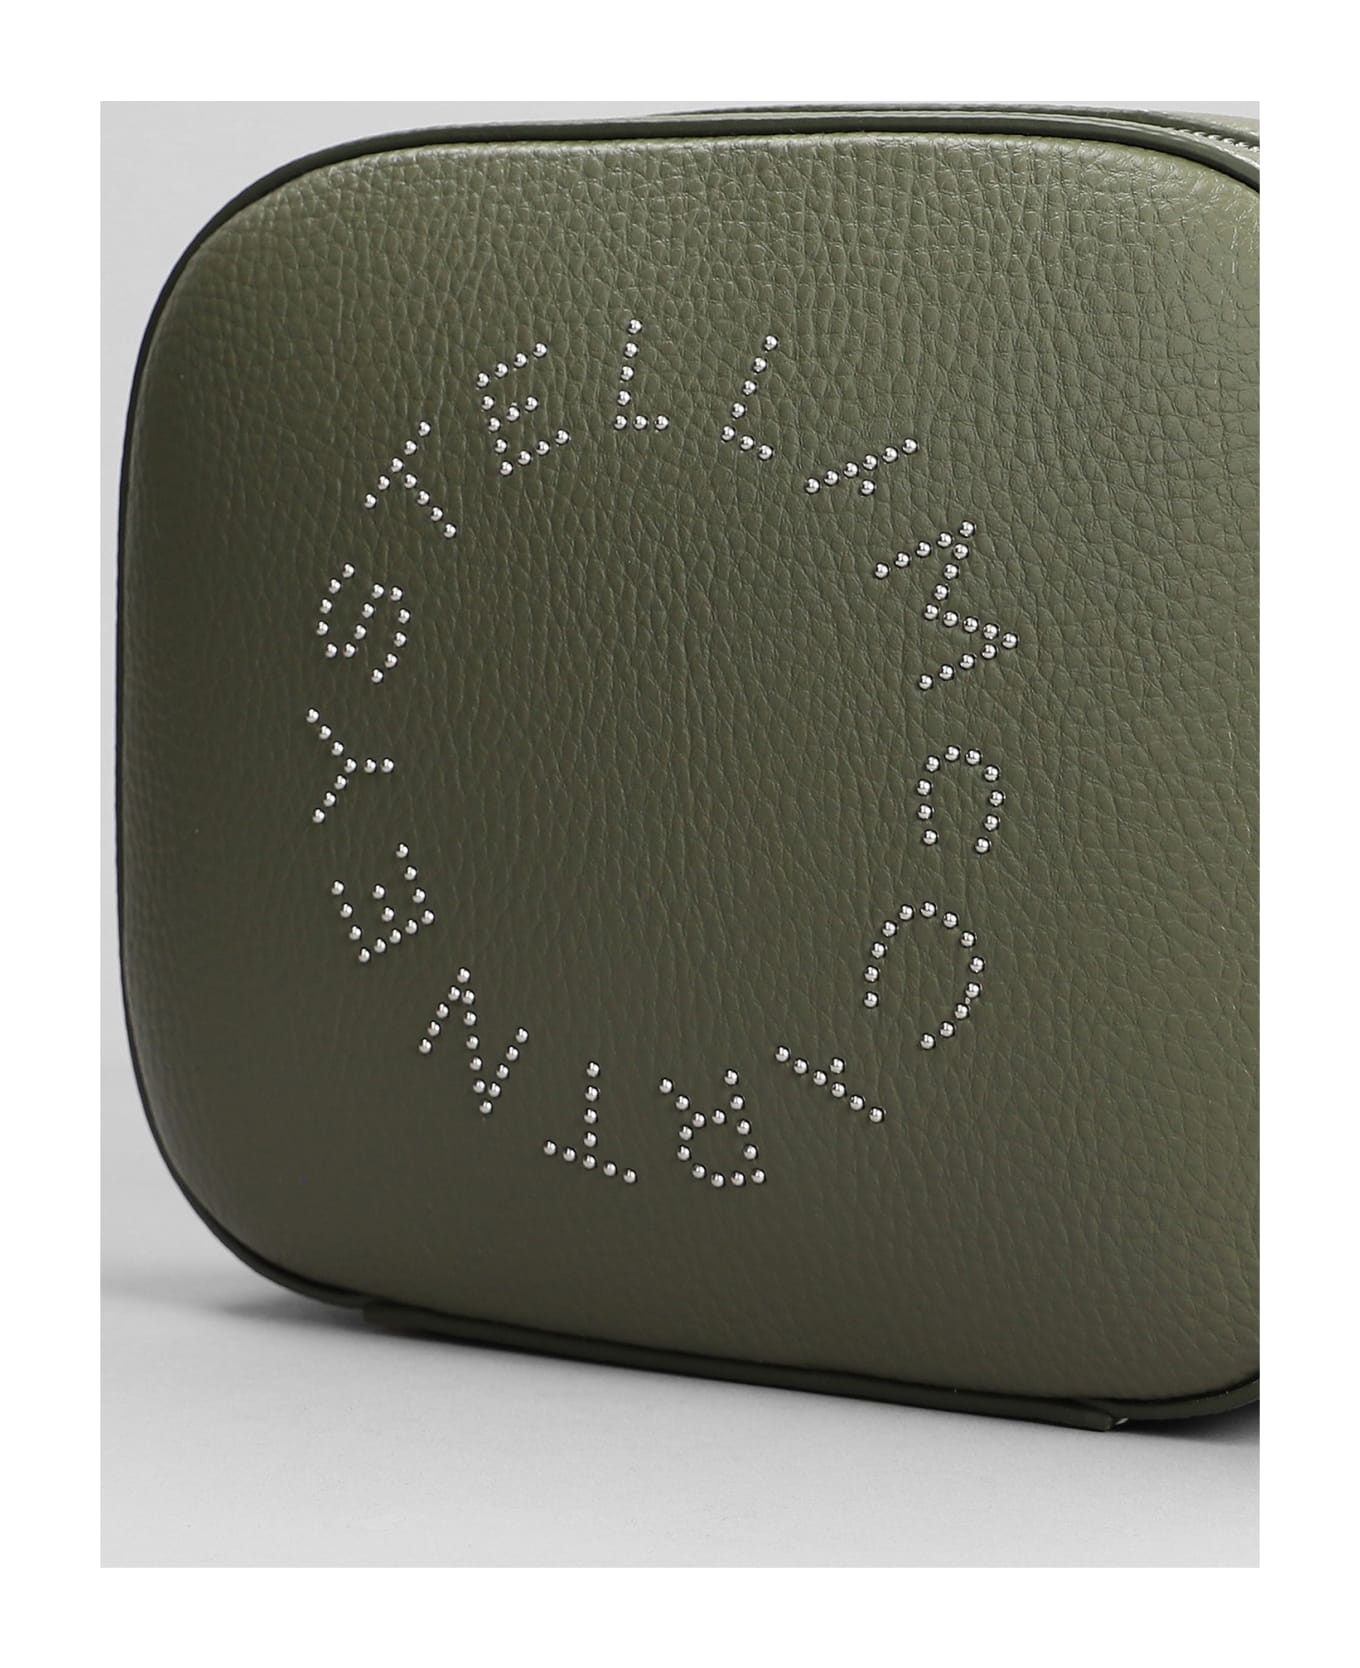 Stella McCartney Shoulder Bag - green